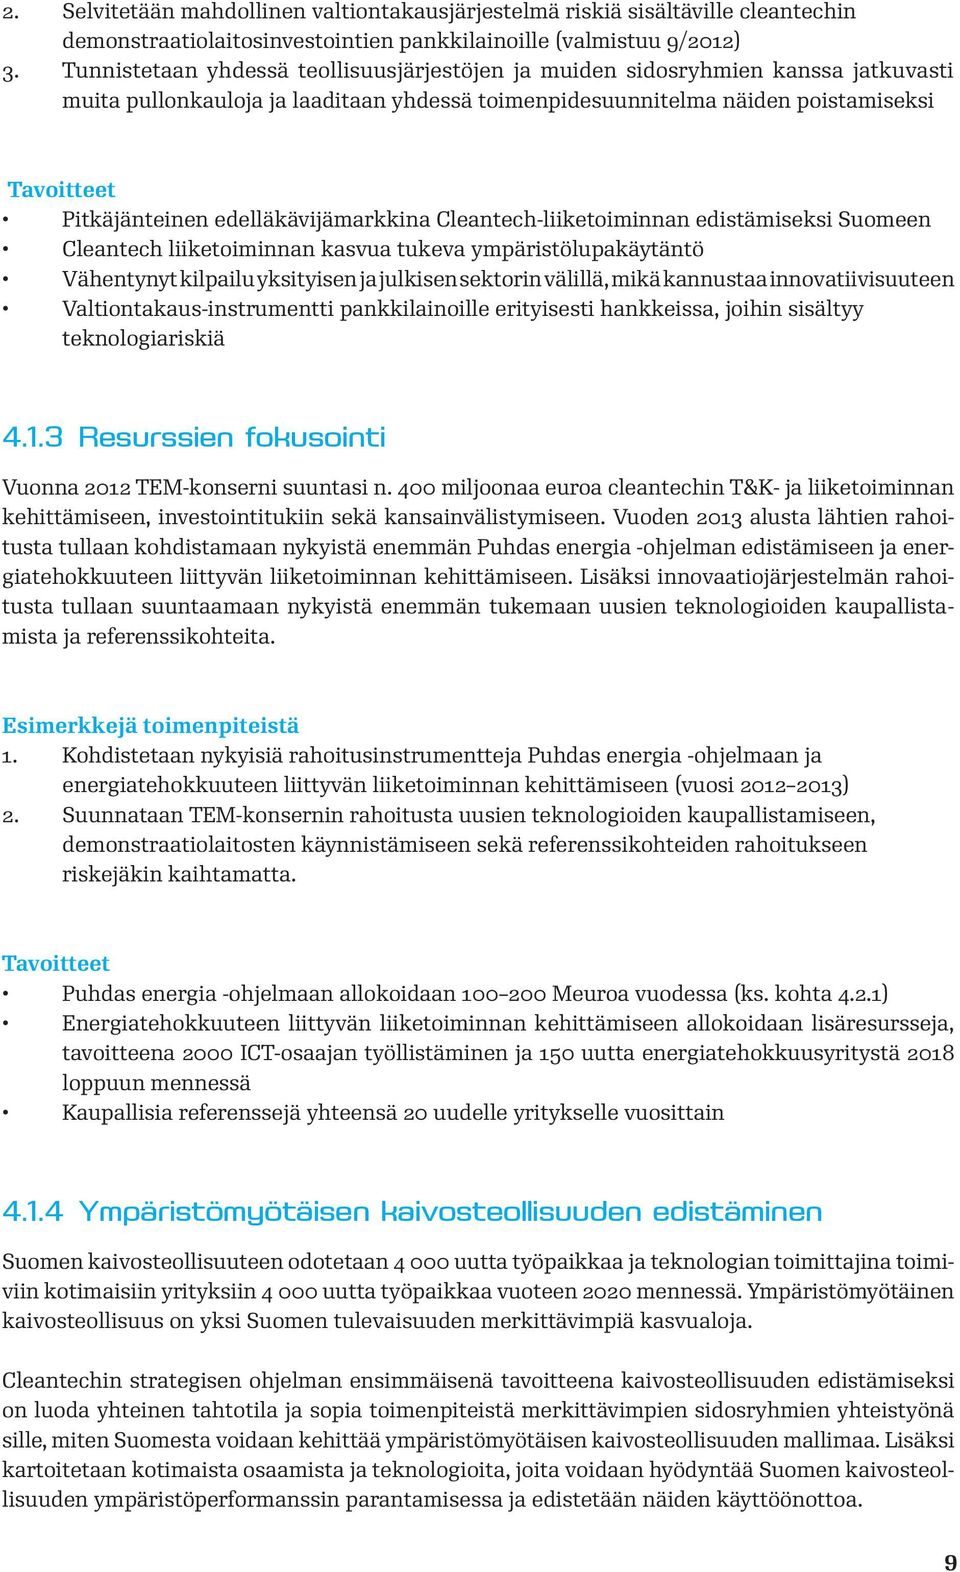 edelläkävijämarkkina Cleantech-liiketoiminnan edistämiseksi Suomeen Cleantech liiketoiminnan kasvua tukeva ympäristölupakäytäntö Vähentynyt kilpailu yksityisen ja julkisen sektorin välillä, mikä